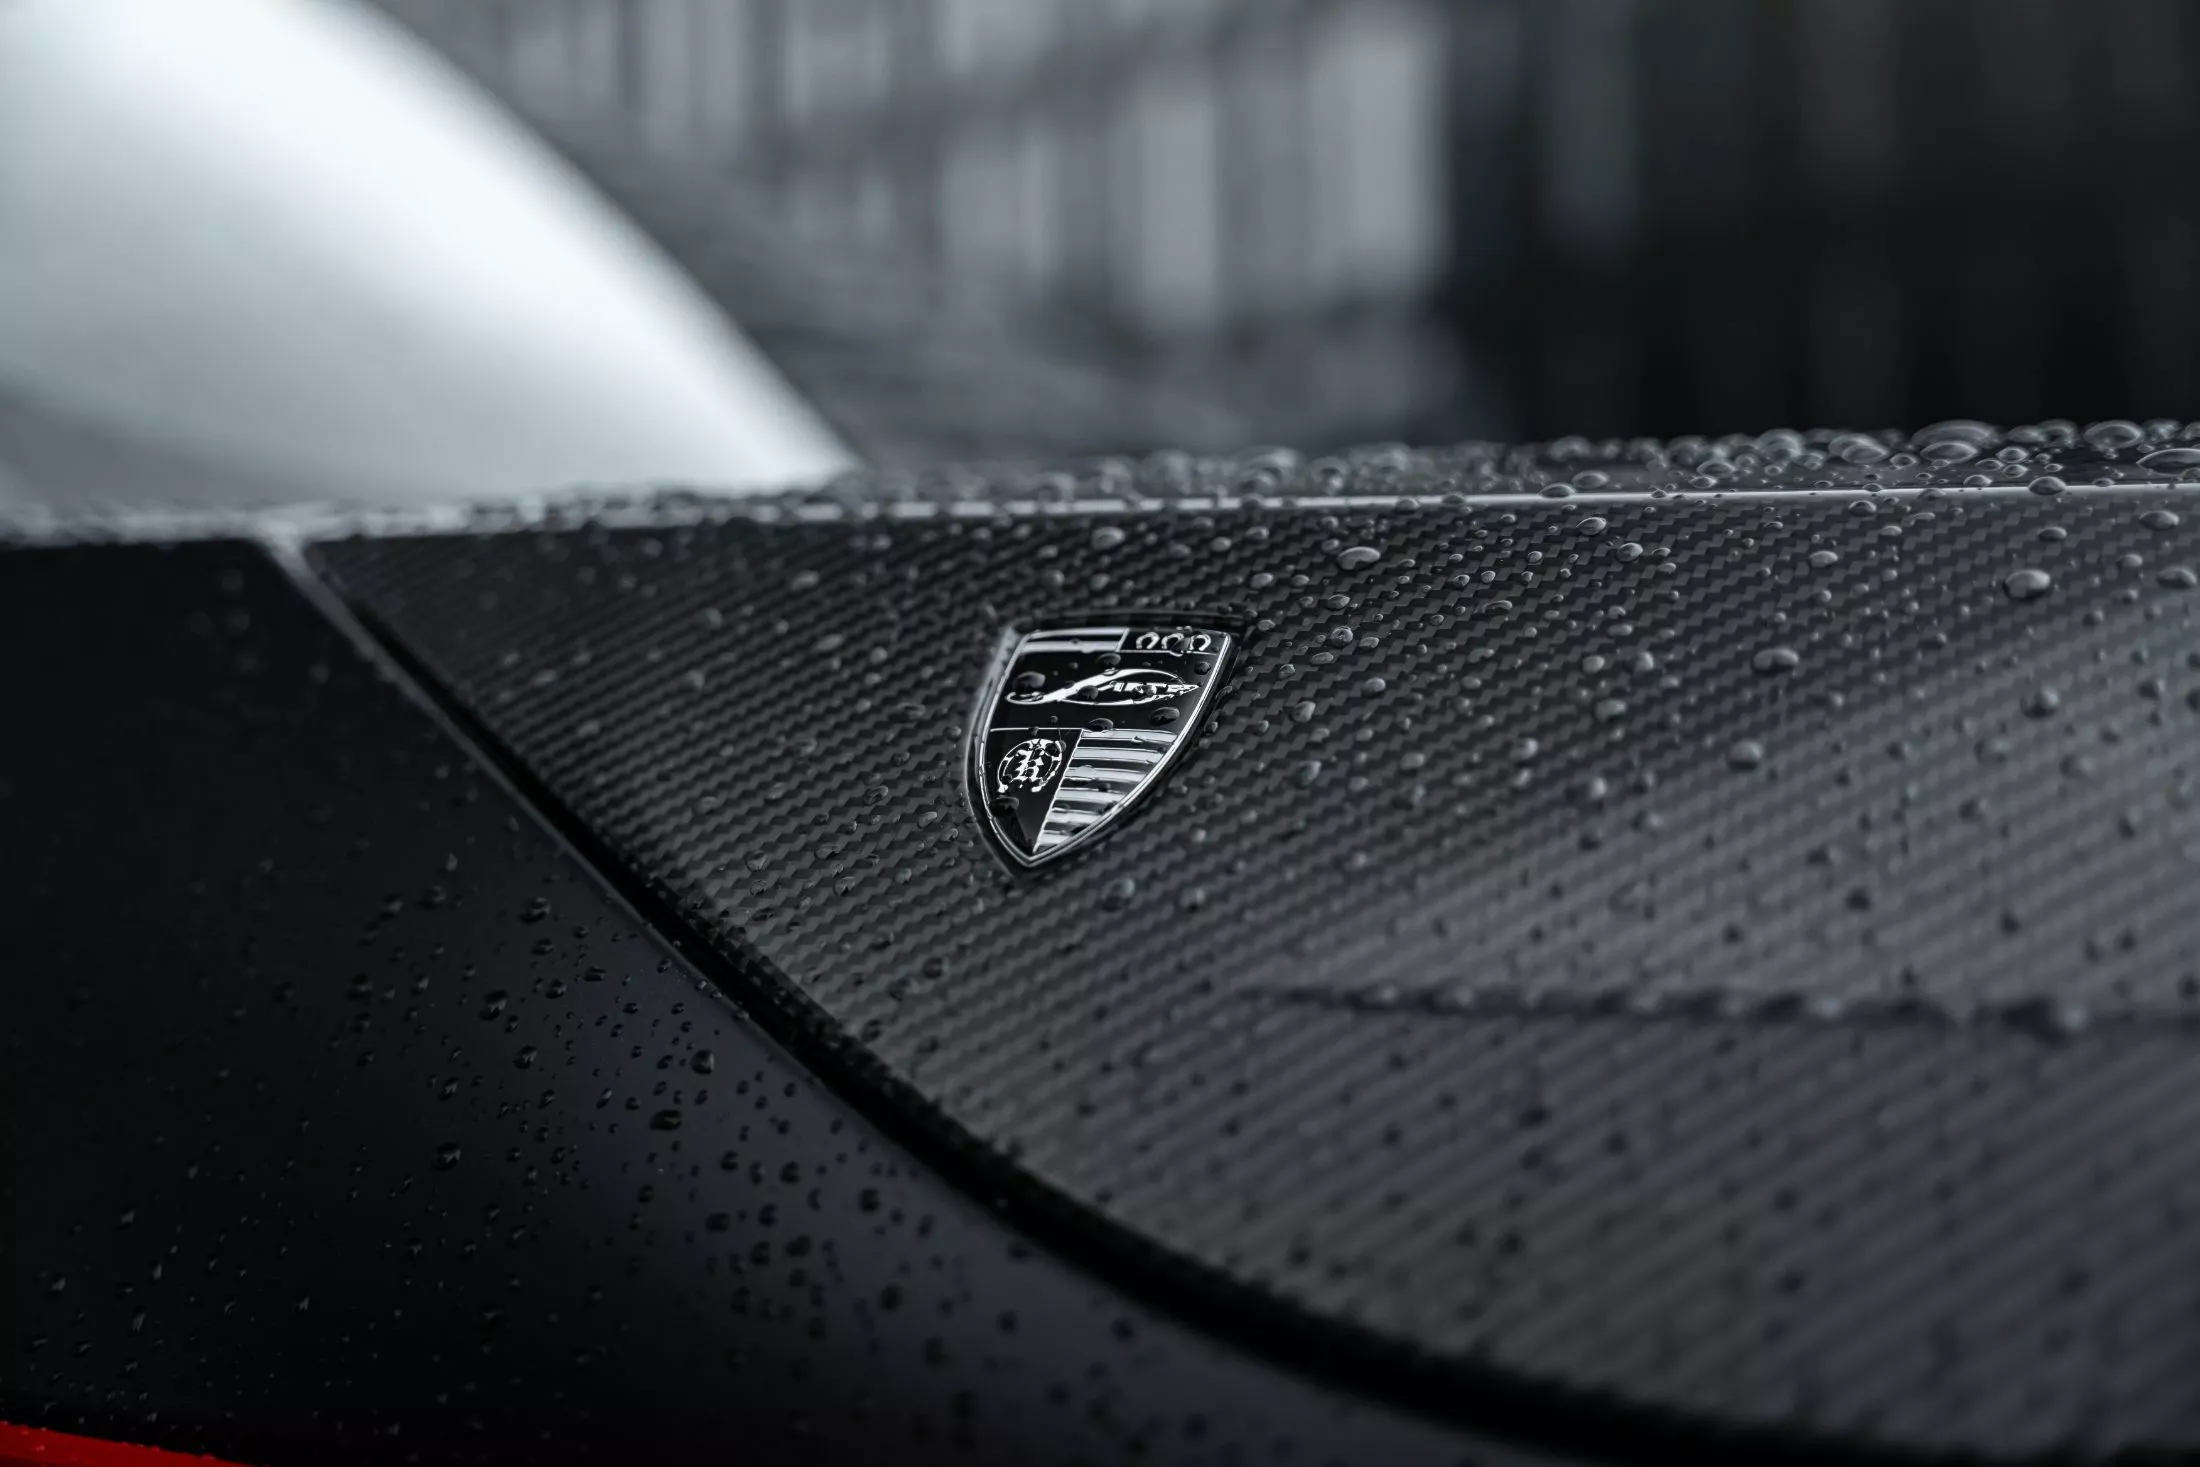 BMW XM 'ngầu' hơn với gói độ Larte Design full carbon, mâm 23 inch